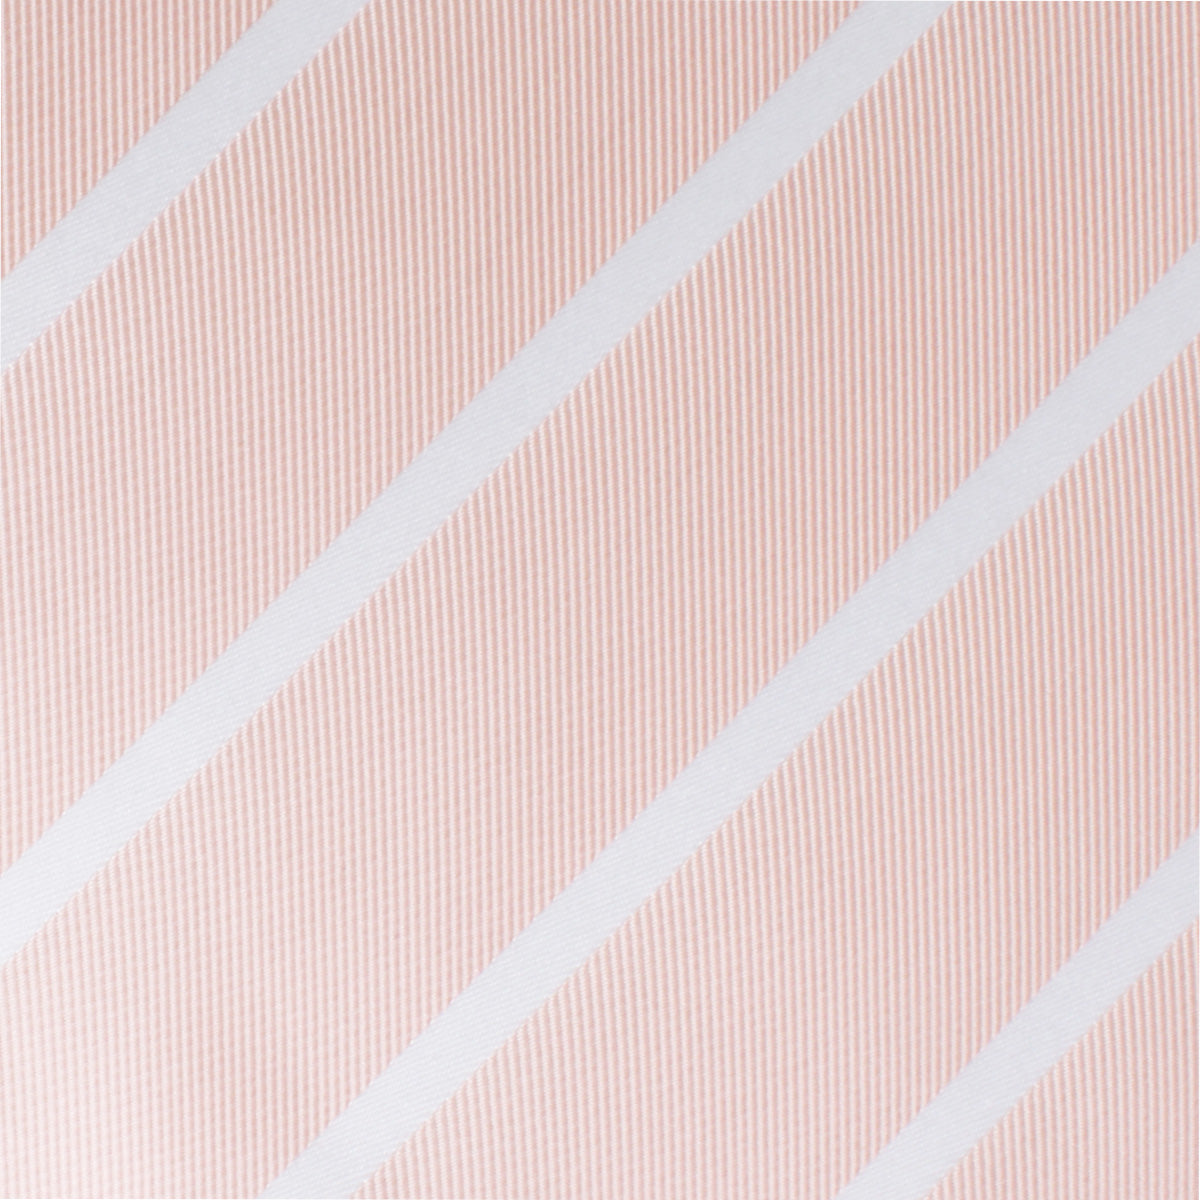 Blush Pink Striped Necktie Fabric